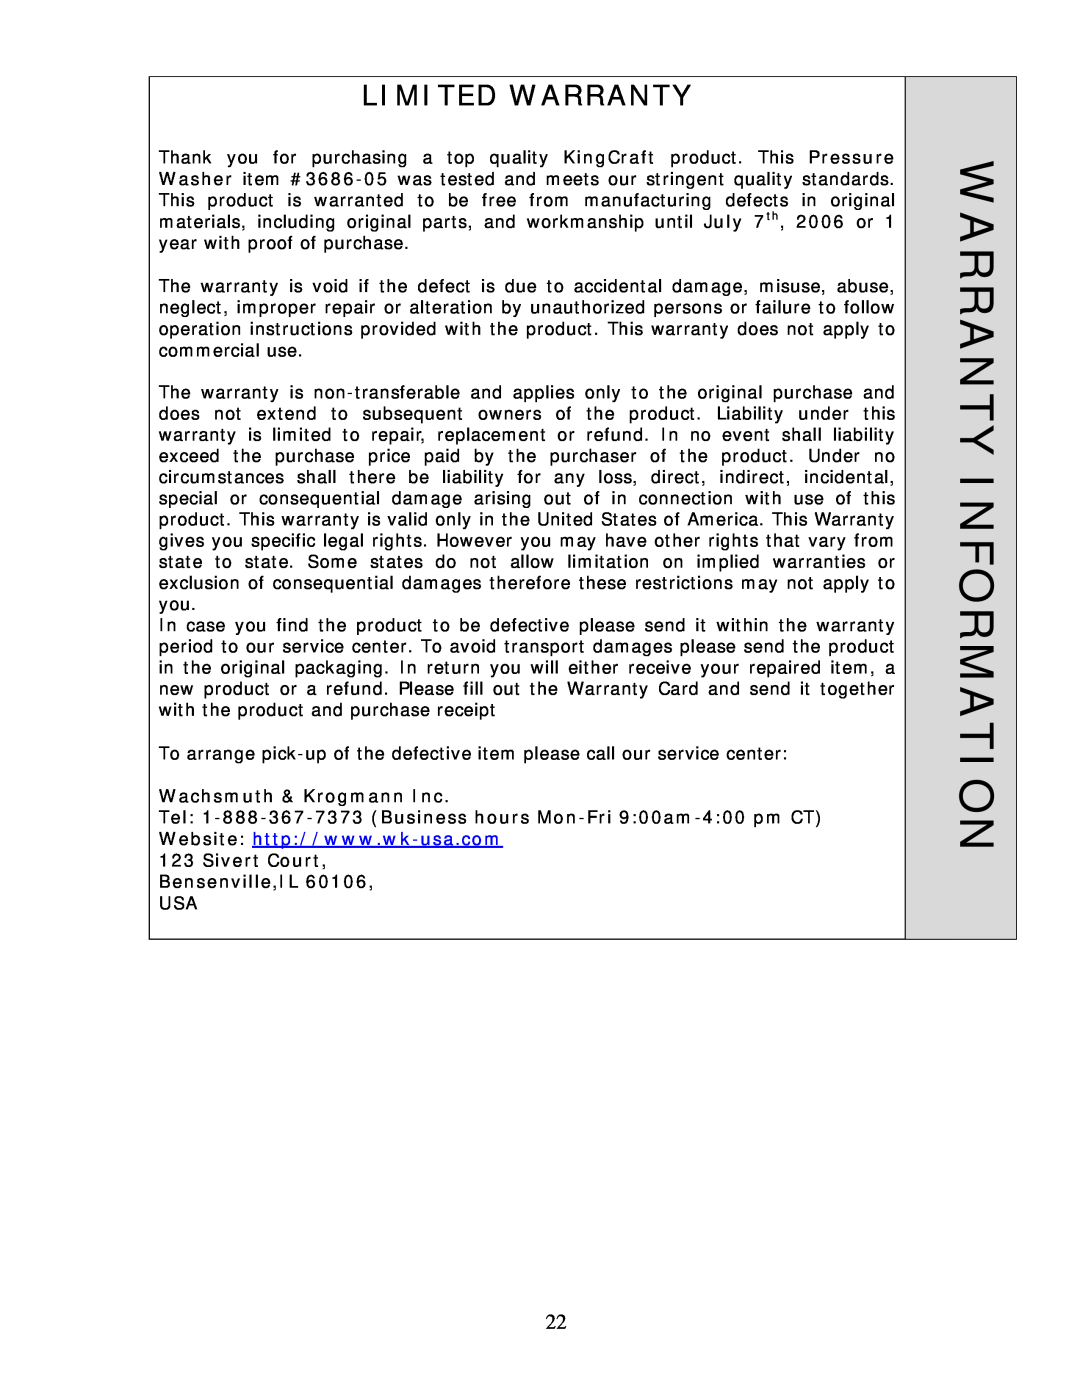 Wachsmuth & Krogmann QL-3100B manual Warranty Information, Wachsmuth & Krogmann Inc, Limited Warranty 